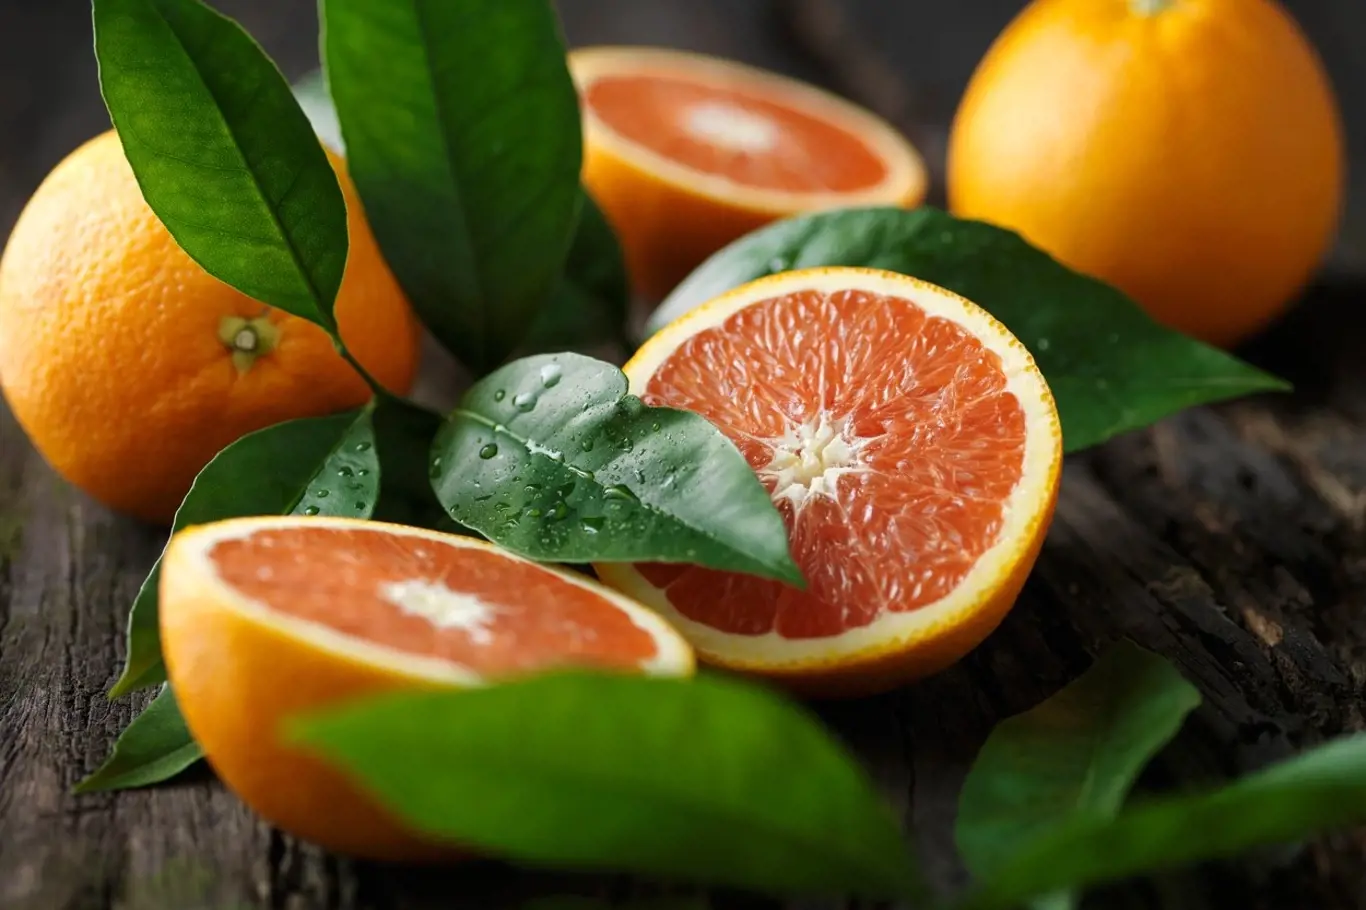 Nejen, že pomerančová kůra dodává pokrmům jedinečnou příchuť a úžasnou vůni, která se rozvine zvlášť u pečení, ale také má řadu využití v péči o naše zdraví